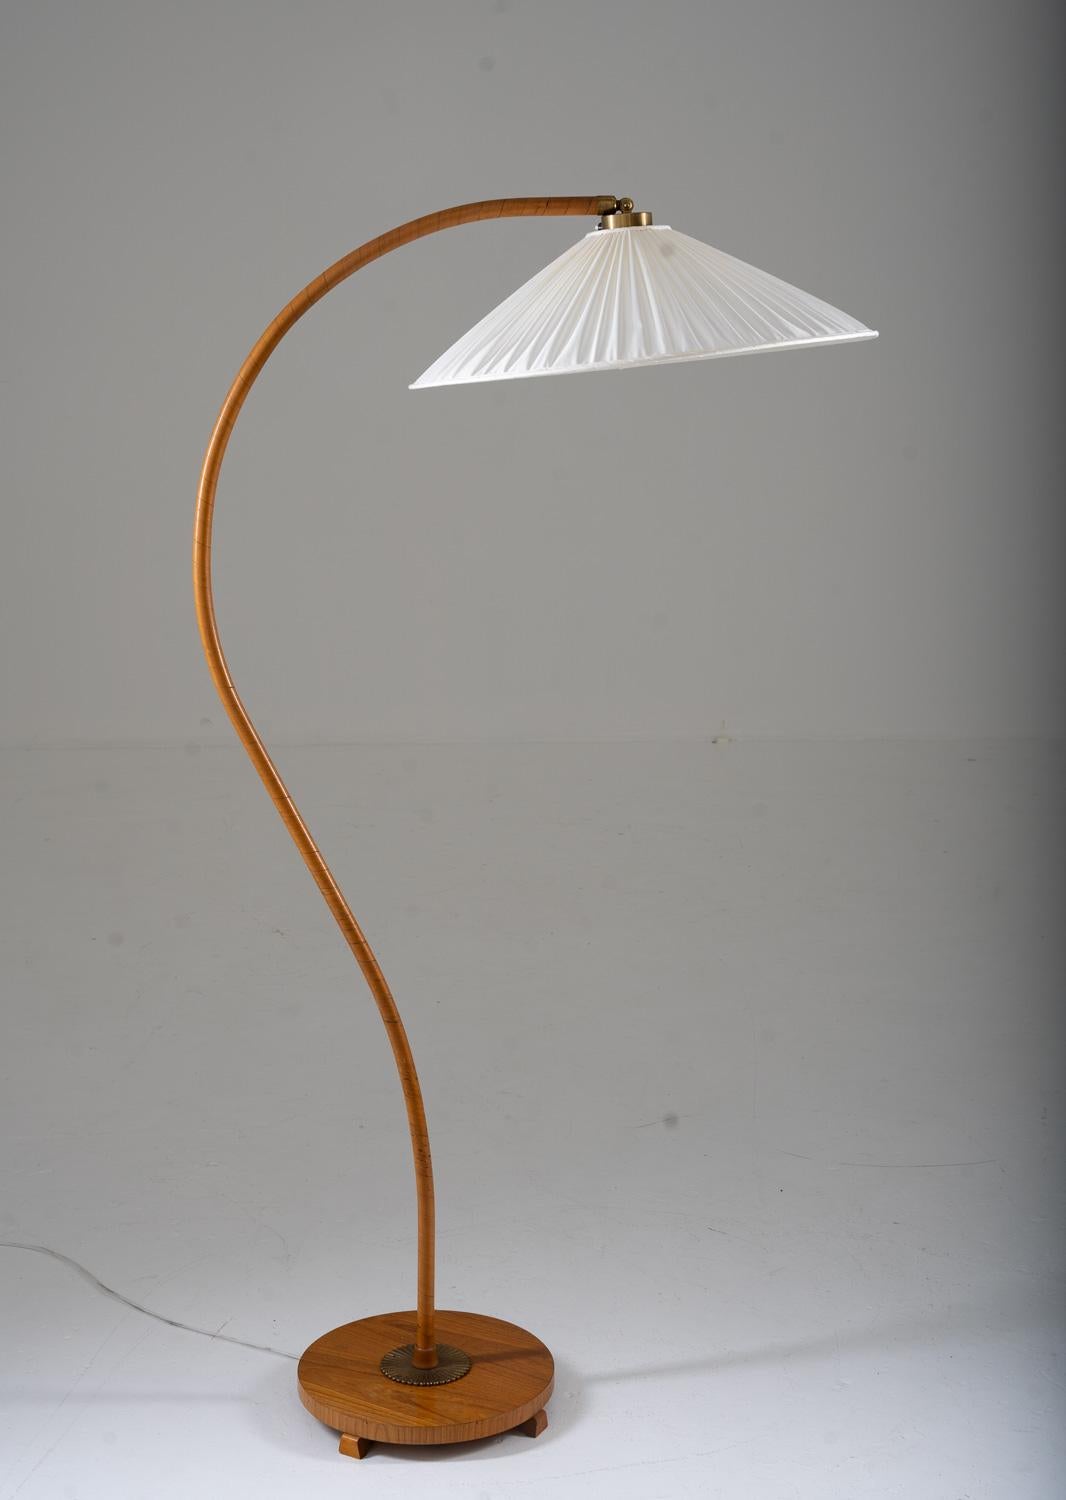 Majestic lampadaire à col de cygne fabriqué en Suède, années 1930.
Ce lampadaire se compose d'une tige joliment courbée et d'une sangle en placage d'orme. La tige est soutenue par une base en bois avec des détails en laiton.

État : très bon état.